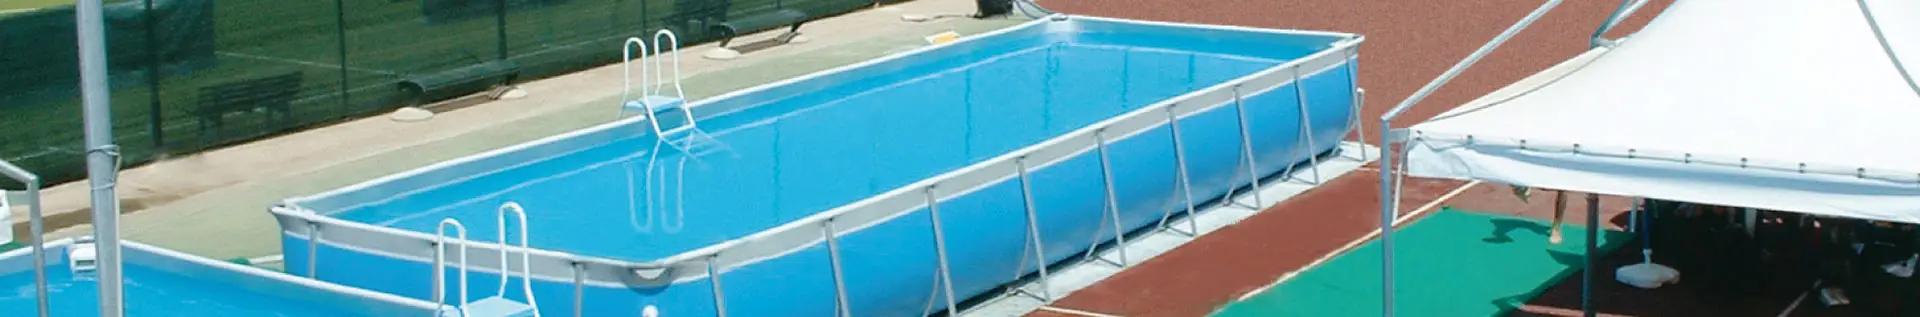 piscina modello NIAGARA - Cod. NI4080